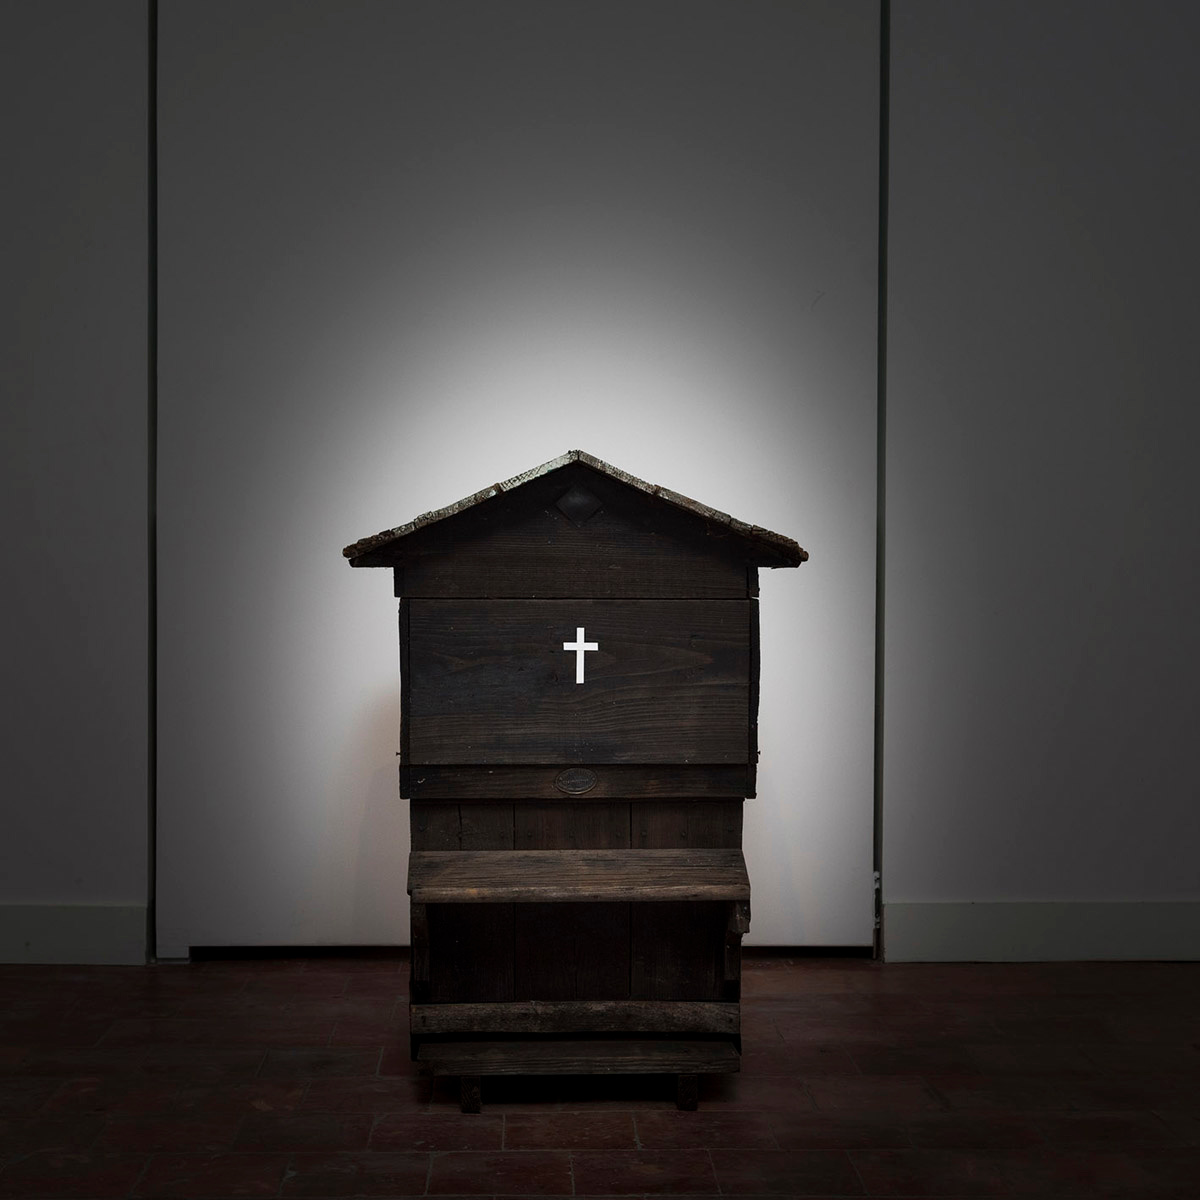 La photographie montre une ruche sombre ornée d'une croix blanche